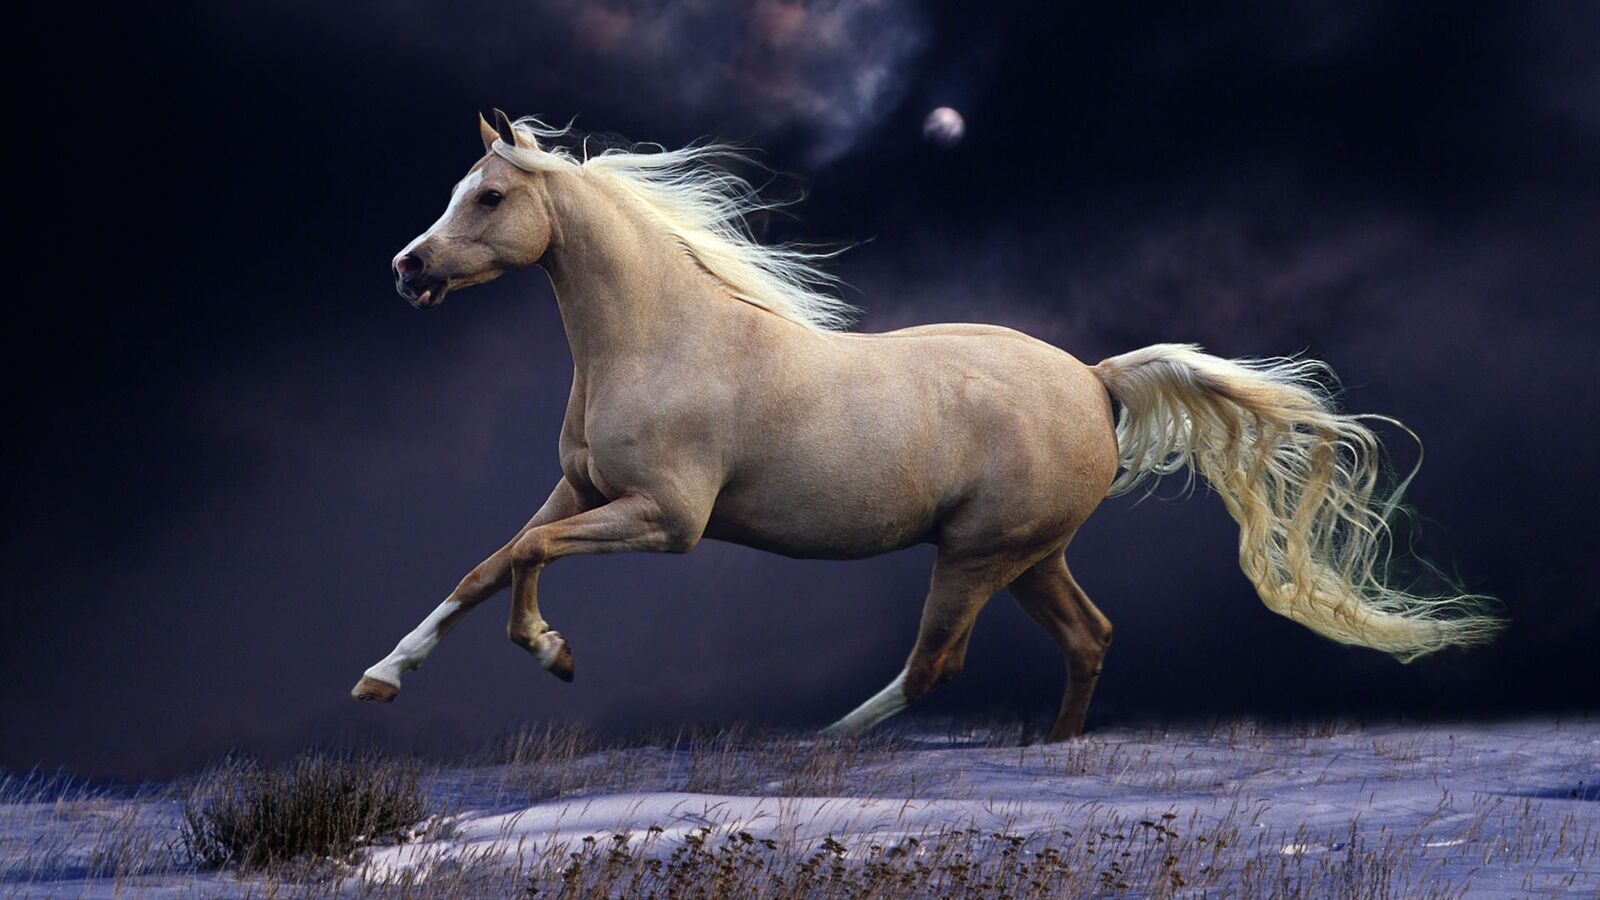 خلفية حصان يجري تحت ضوء القمر اللامع